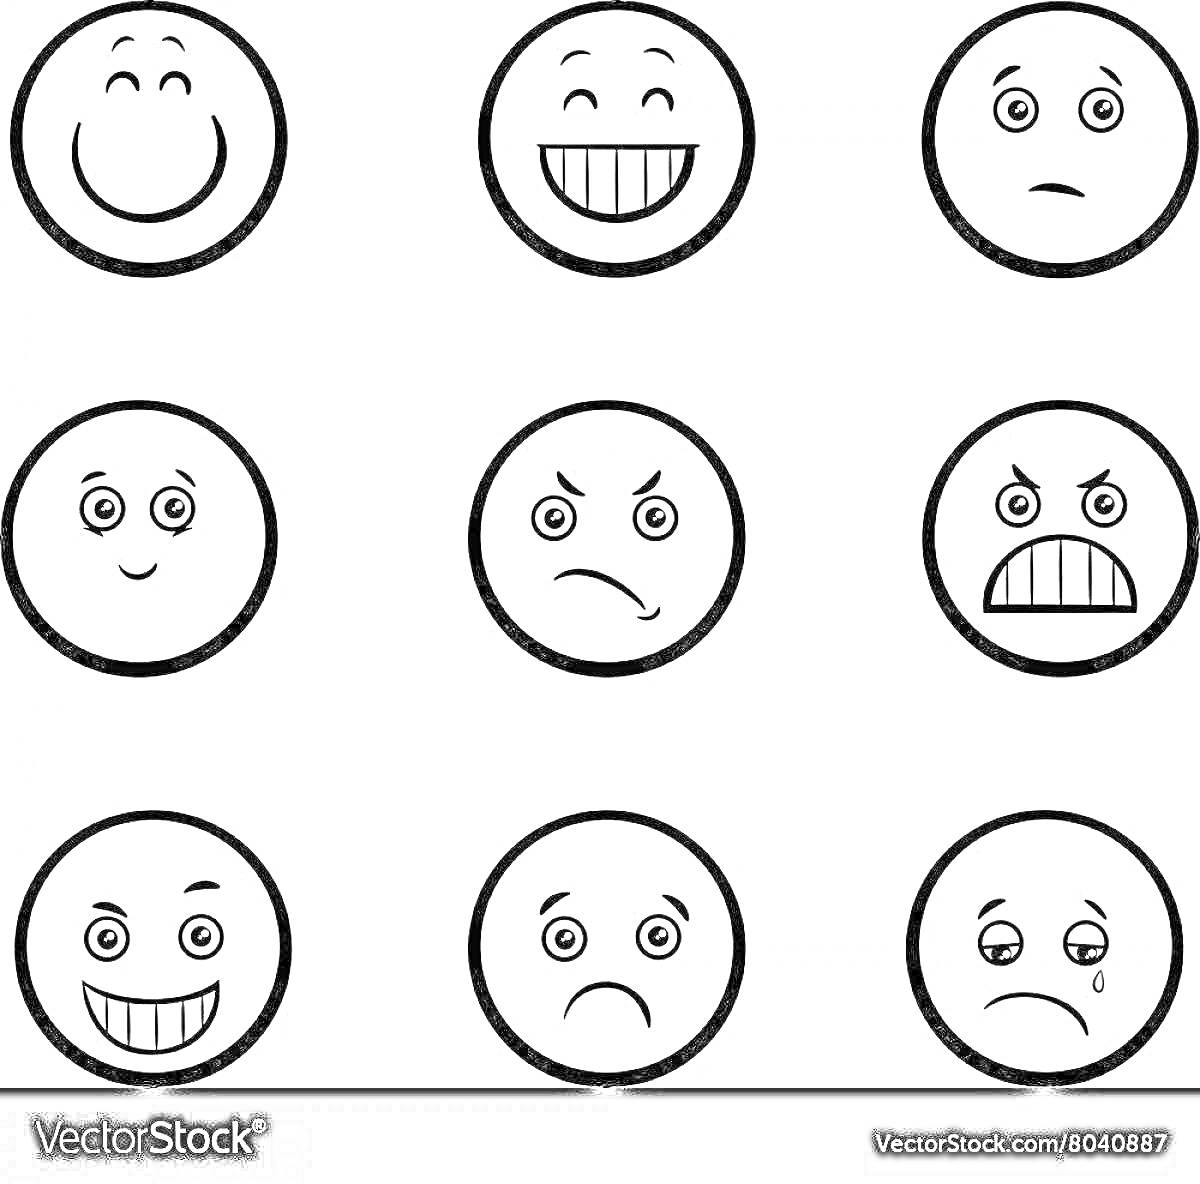 Раскраска 9 смайликов с различными эмоциями - счастливый, улыбающийся, грустный, радостный, сердитый, злой, ликующий, расстроенный, плачущий